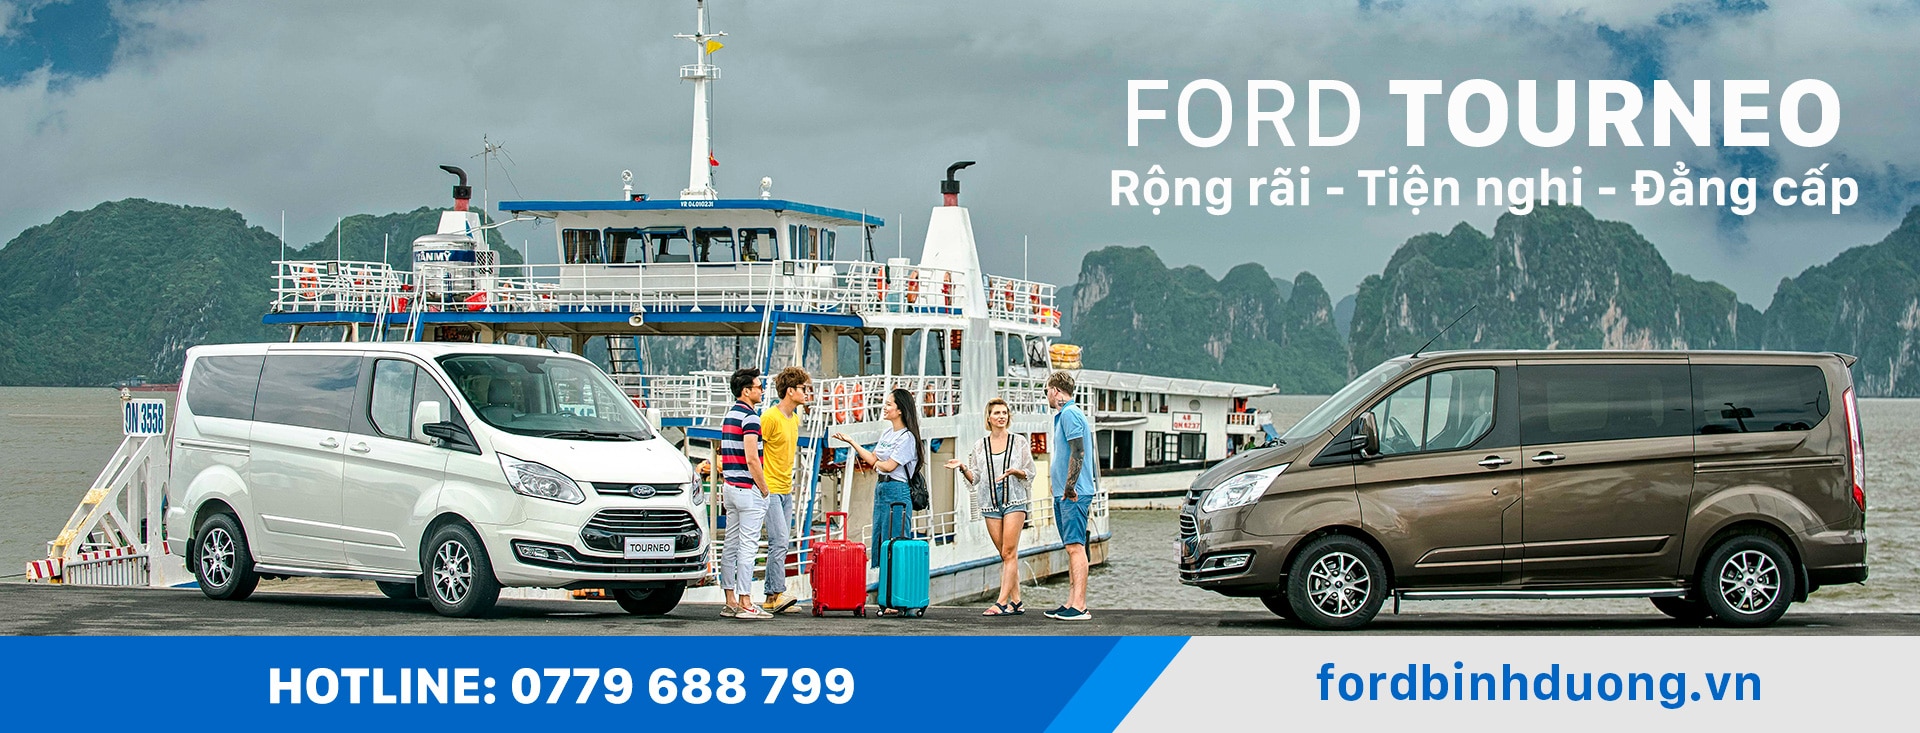 Ford Tourneo 2022 - Ford Bình Dương - Hotline: 0779688799